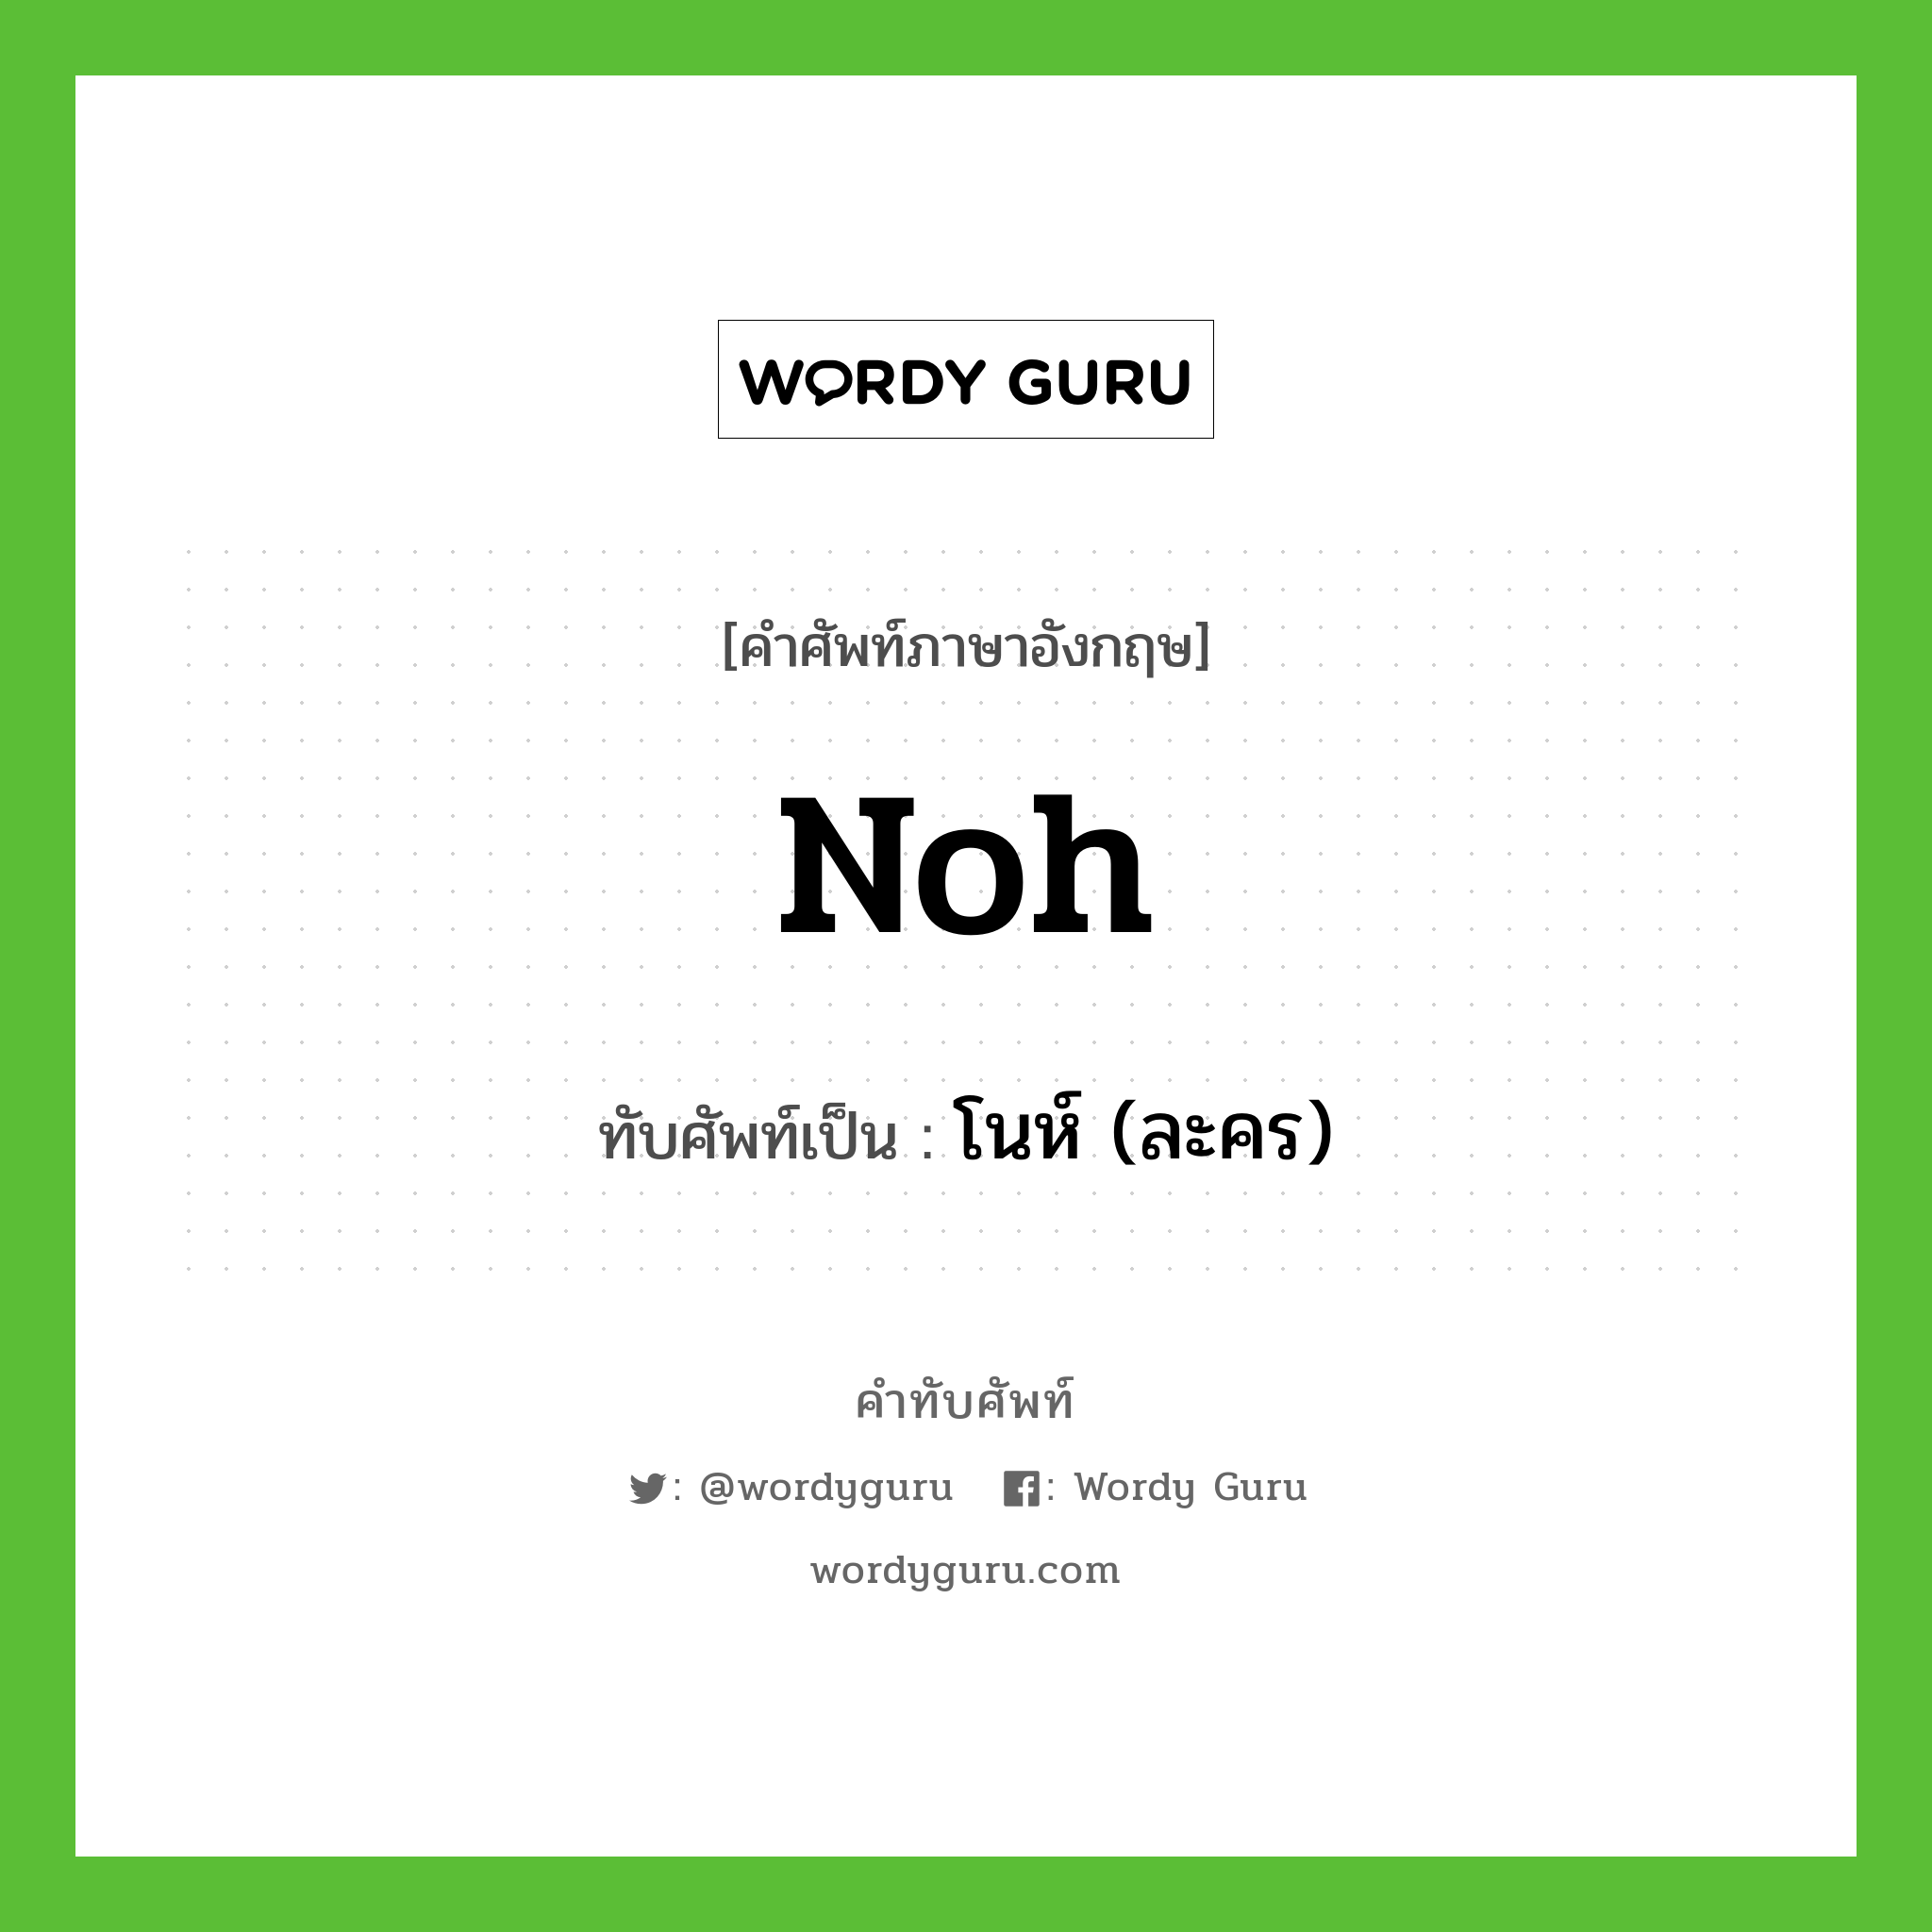 Noh เขียนเป็นคำไทยว่าอะไร?, คำศัพท์ภาษาอังกฤษ Noh ทับศัพท์เป็น โนห์ (ละคร)